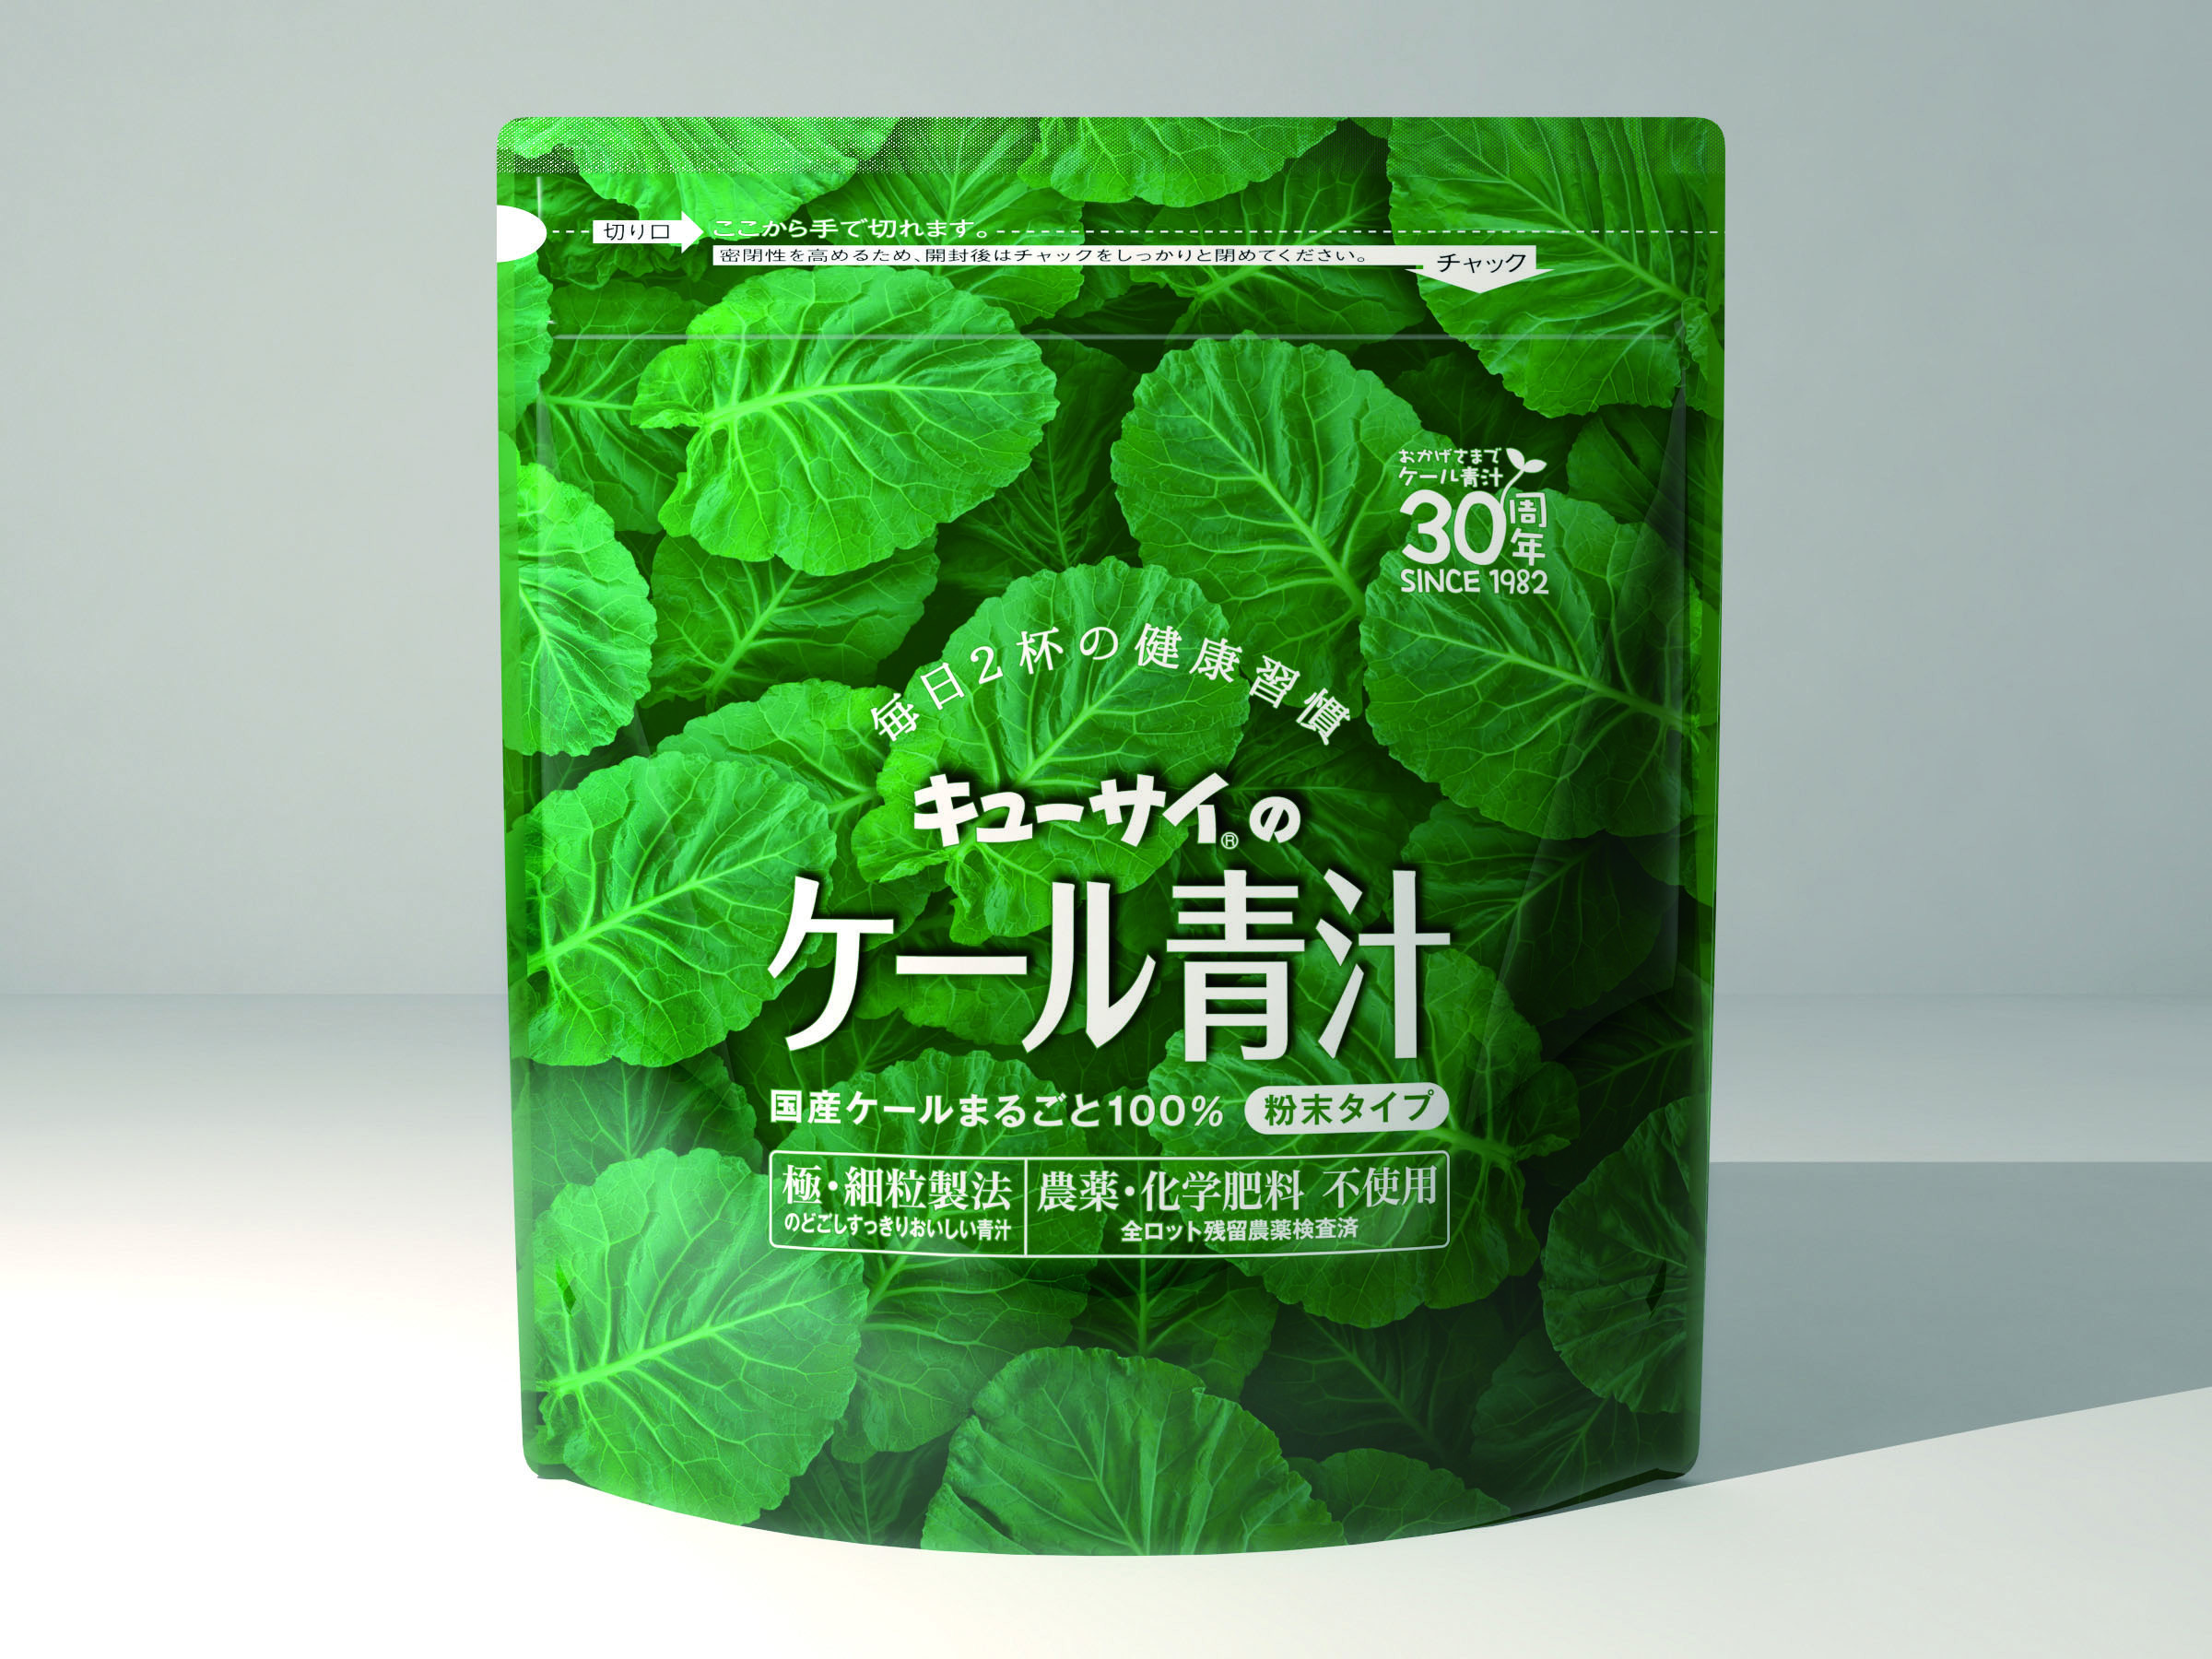 青汁シリーズの商品名とパッケージデザインを変更｜キューサイ株式会社のプレスリリース